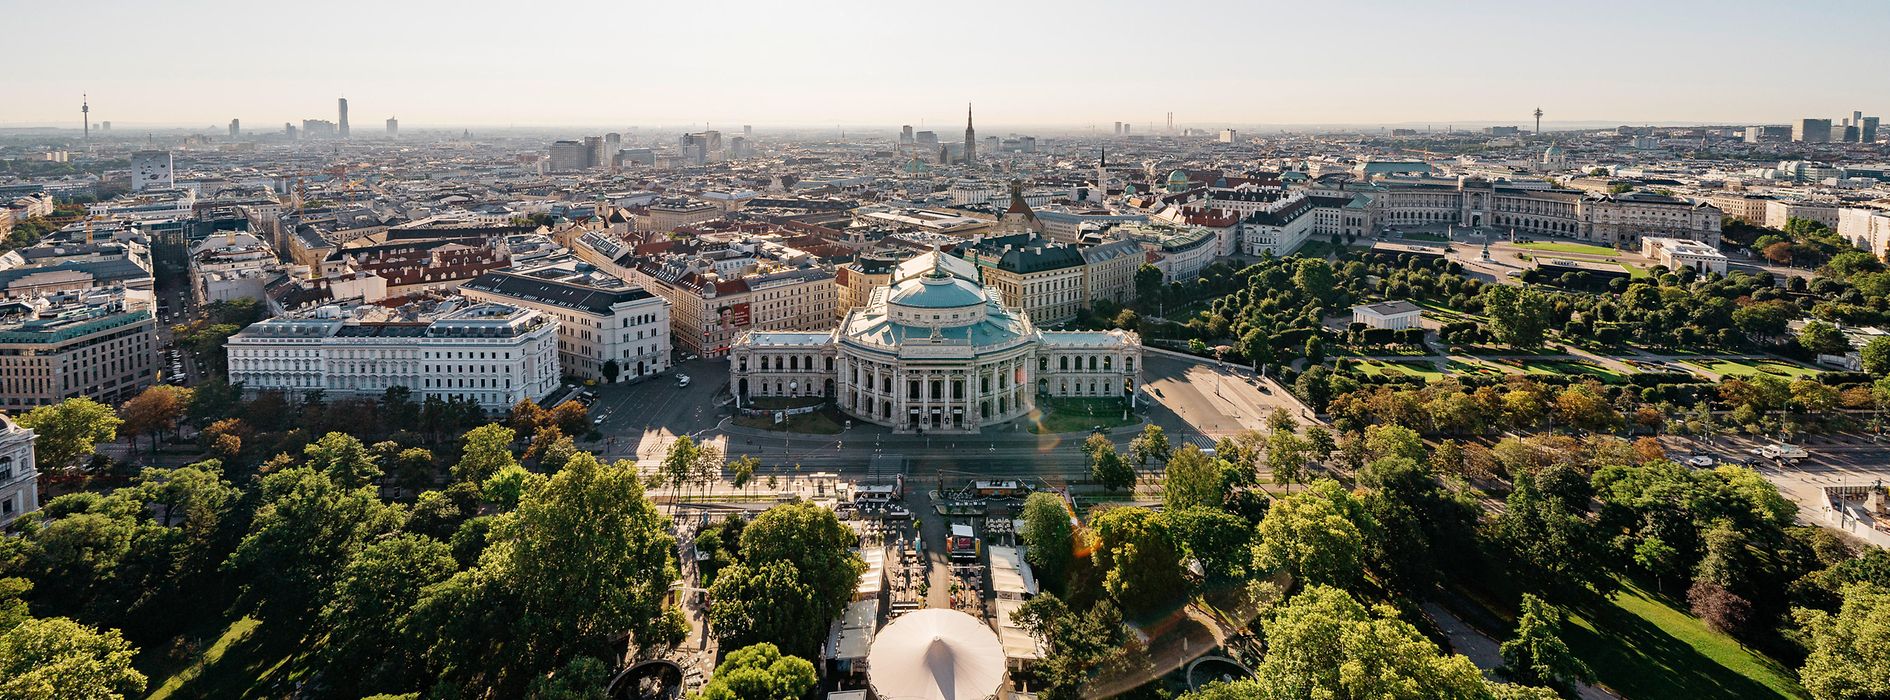 ウィーン、市庁舎からの眺望